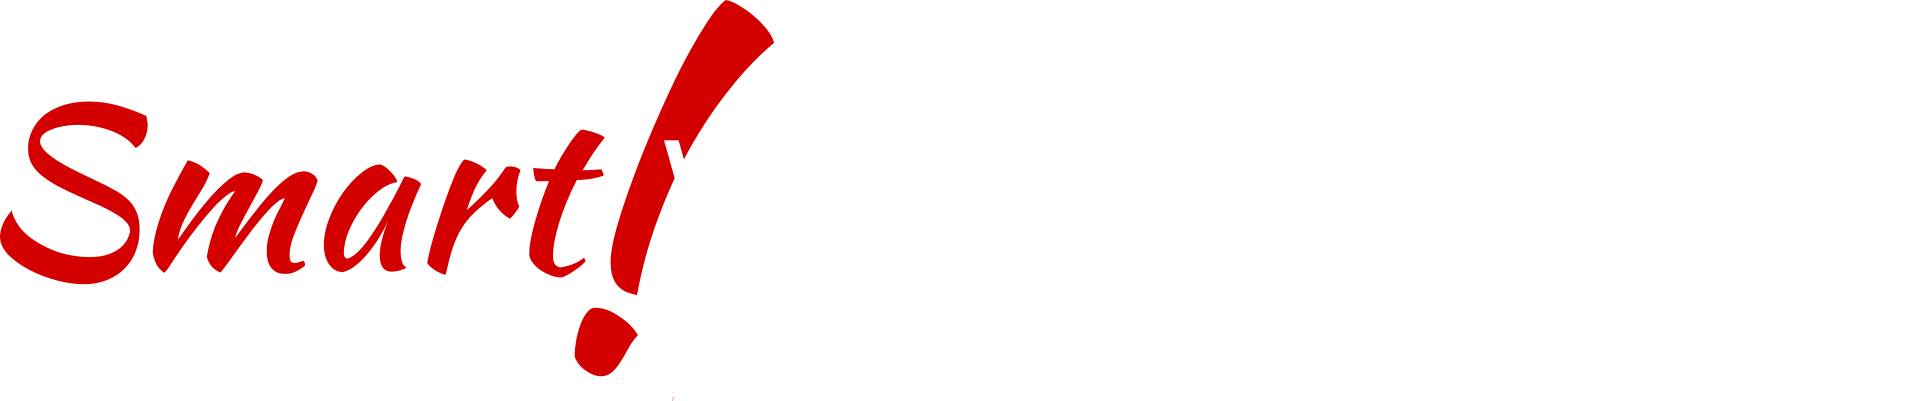 Logo Smart Web Agency